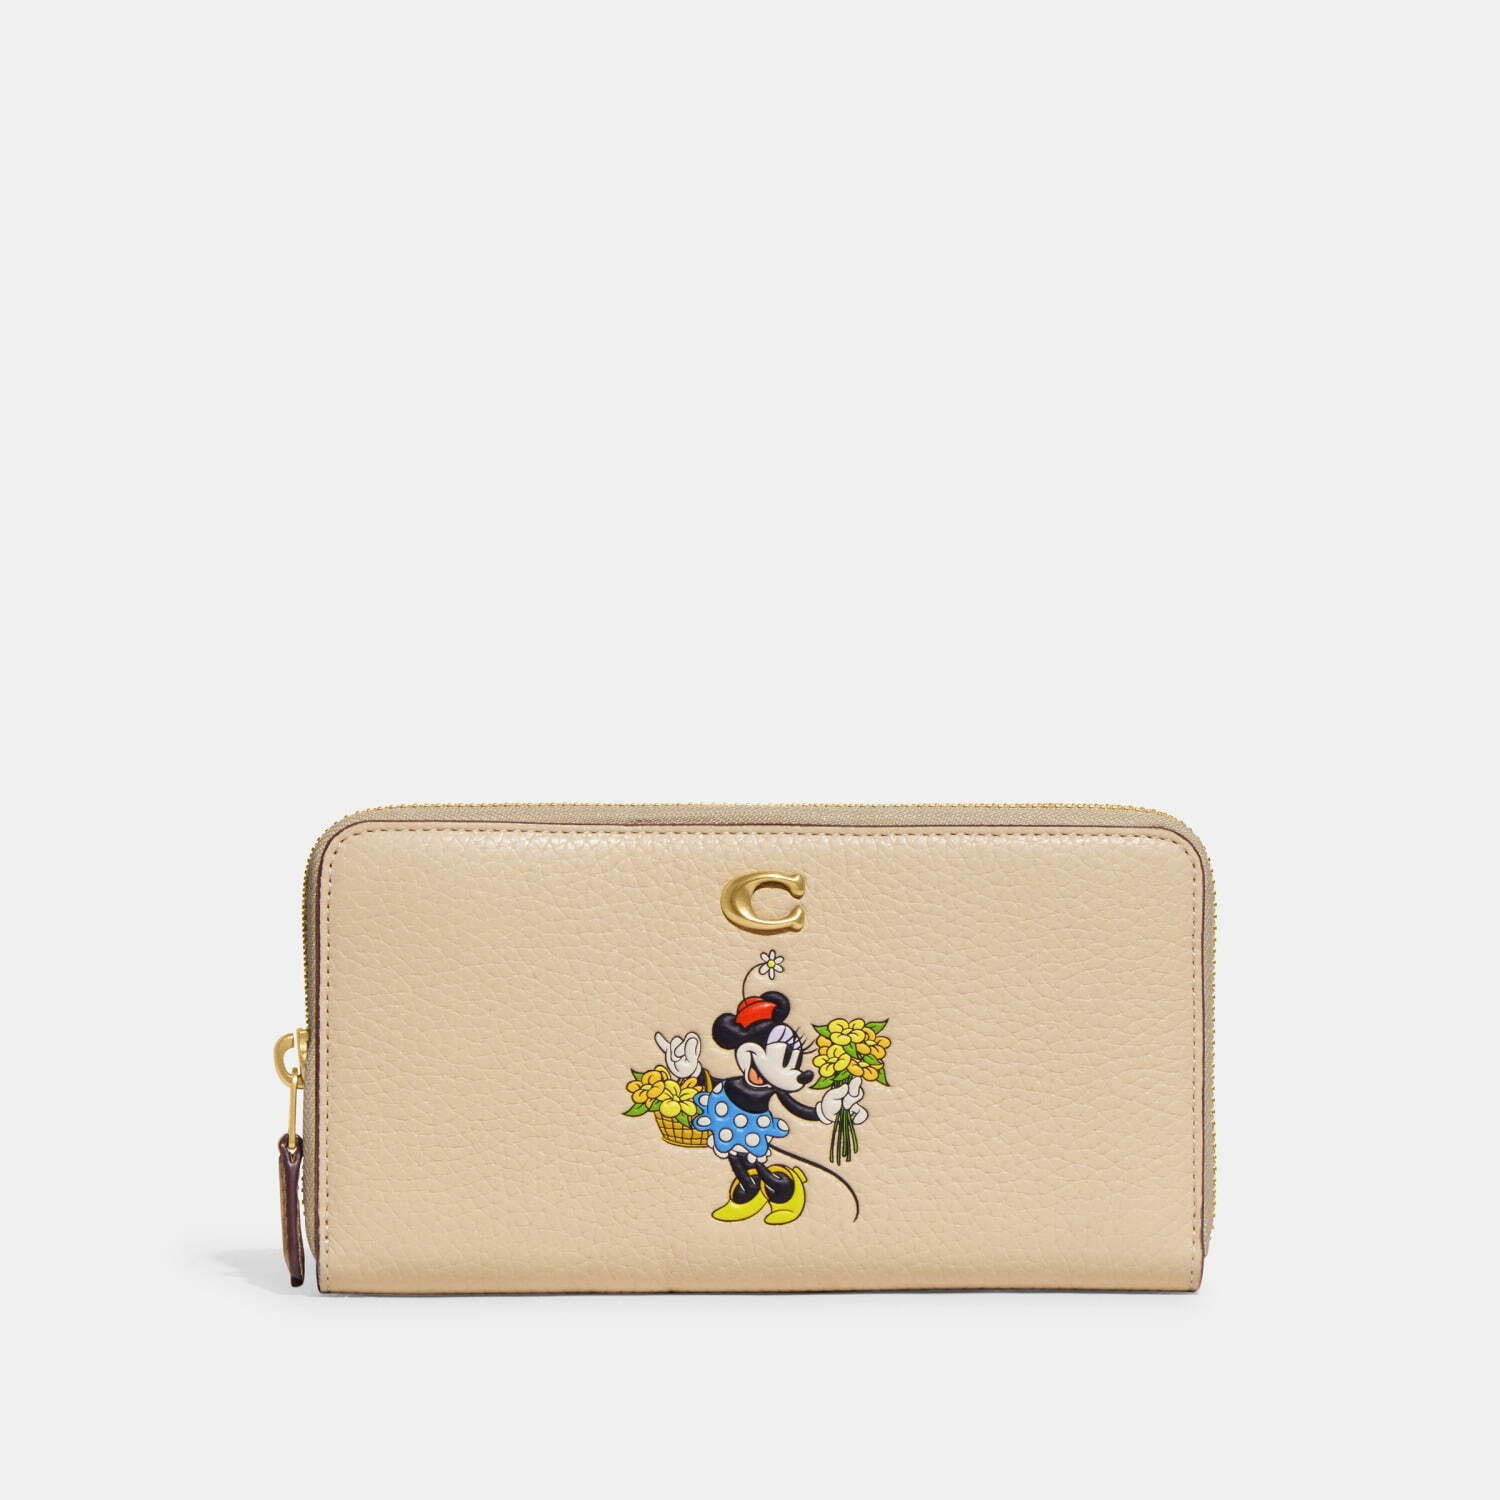 〈コーチ〉「ディズニー」ブーケを手にしたミニーマウスの革製長財布